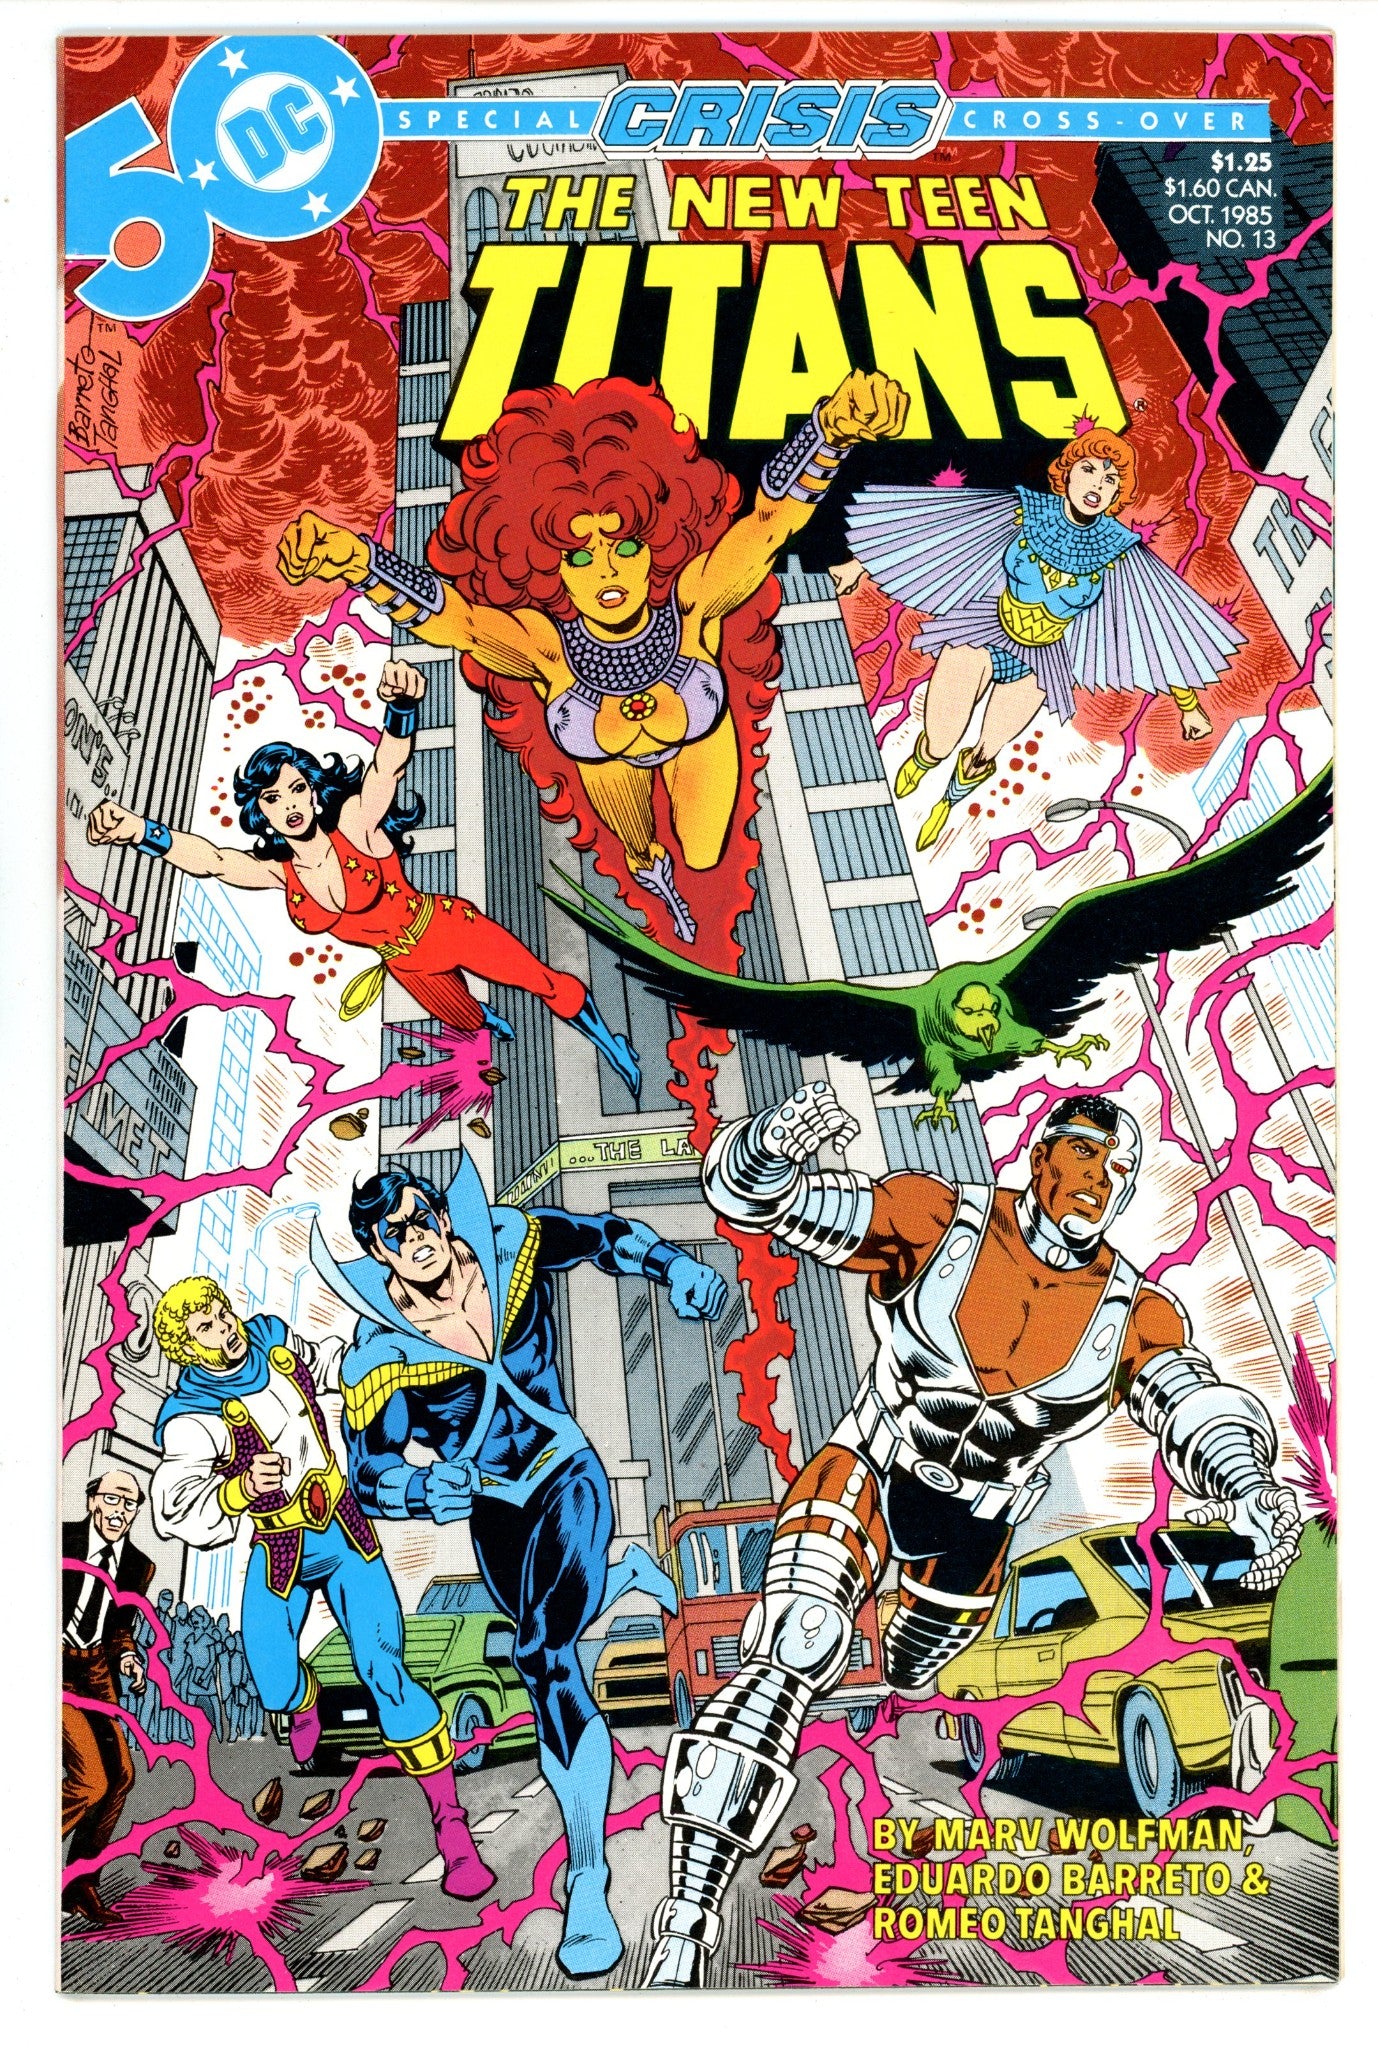 The New Teen Titans Vol 2 13 High Grade (1985) 